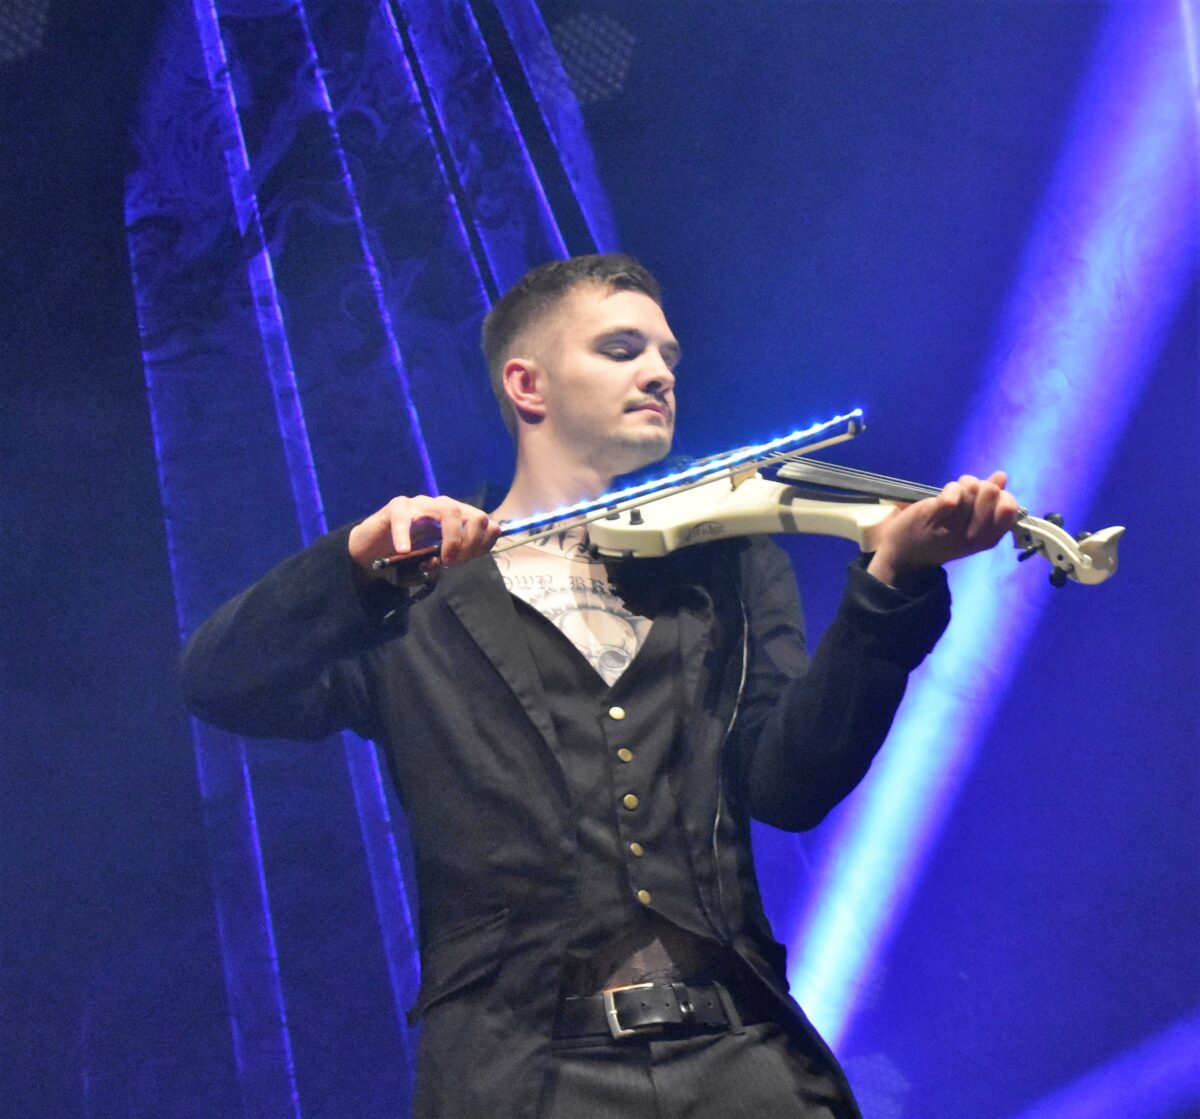 Absolut virtuos beherrschte Chris Schäfer seine E-Geige. Foto: Renate Gradl